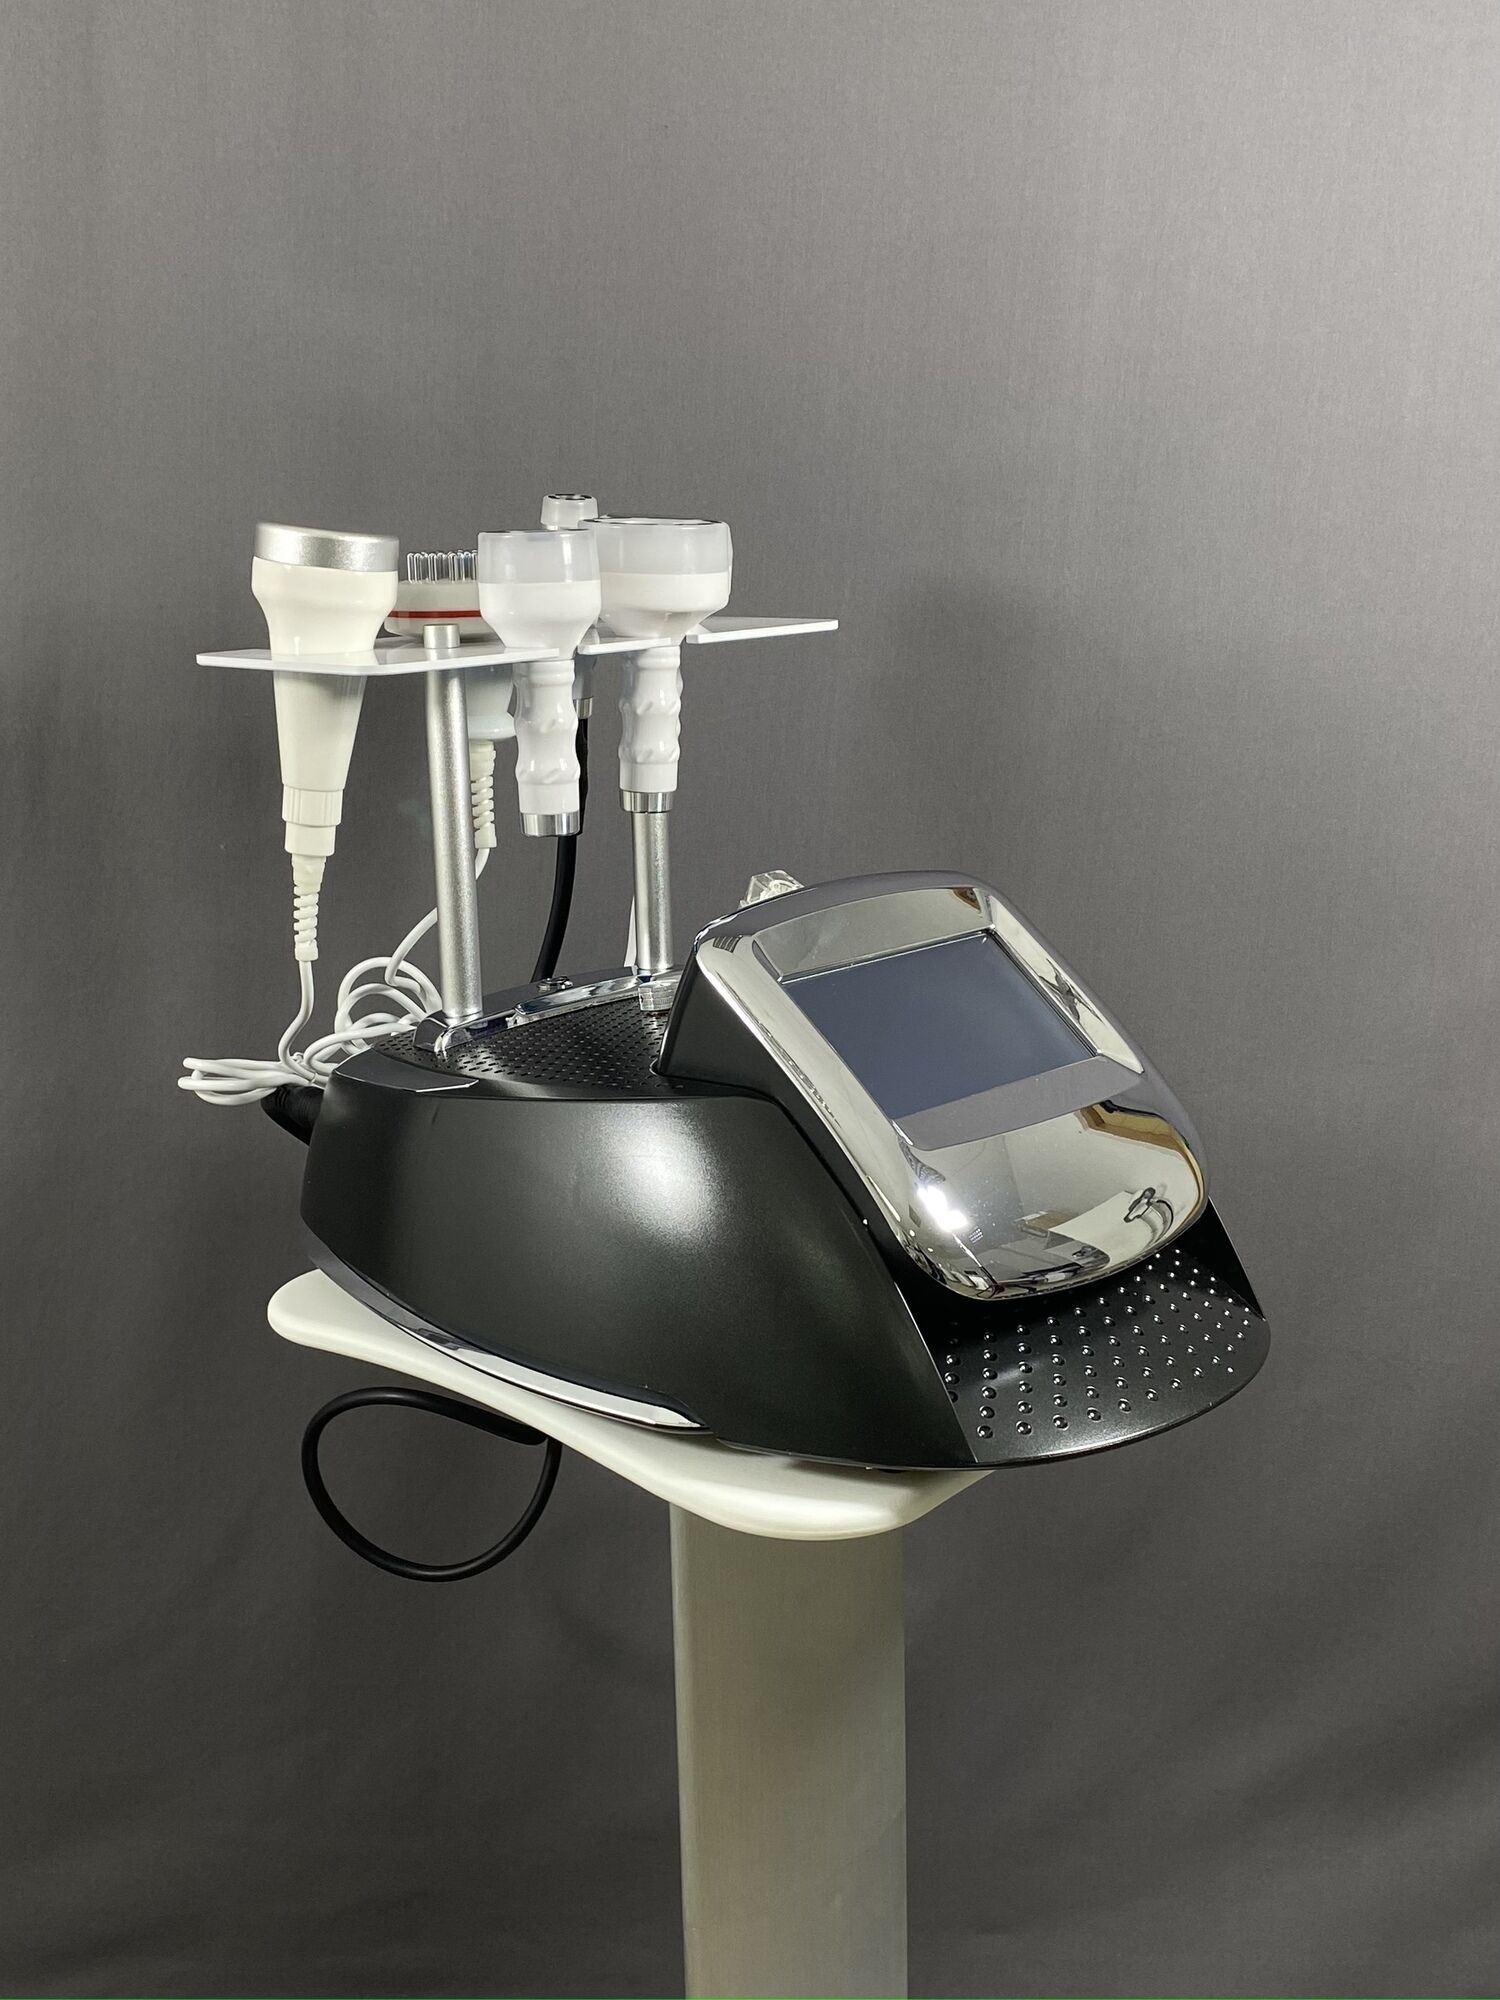 Аппарат WL-12 mini 6 в 1: кавитация 80кгц, вакуумный массаж с РФ, фотохромотерапия, вибромассаж, биофотон (черный корпус